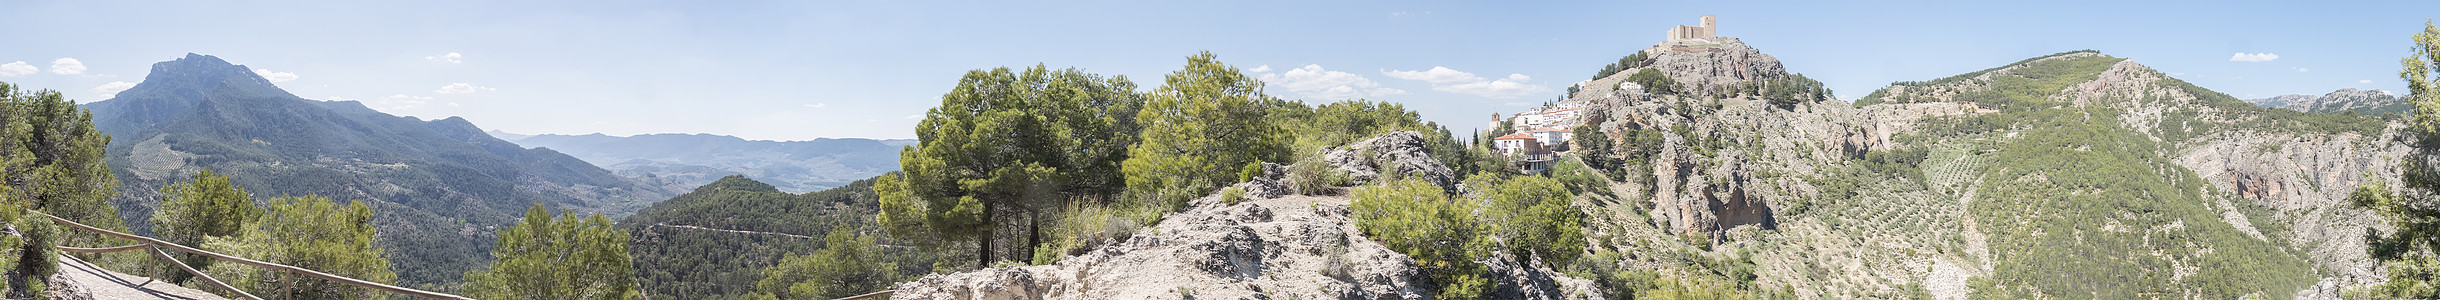 全景 哈恩 西班牙 步行 流动的 岩石 跑道图片